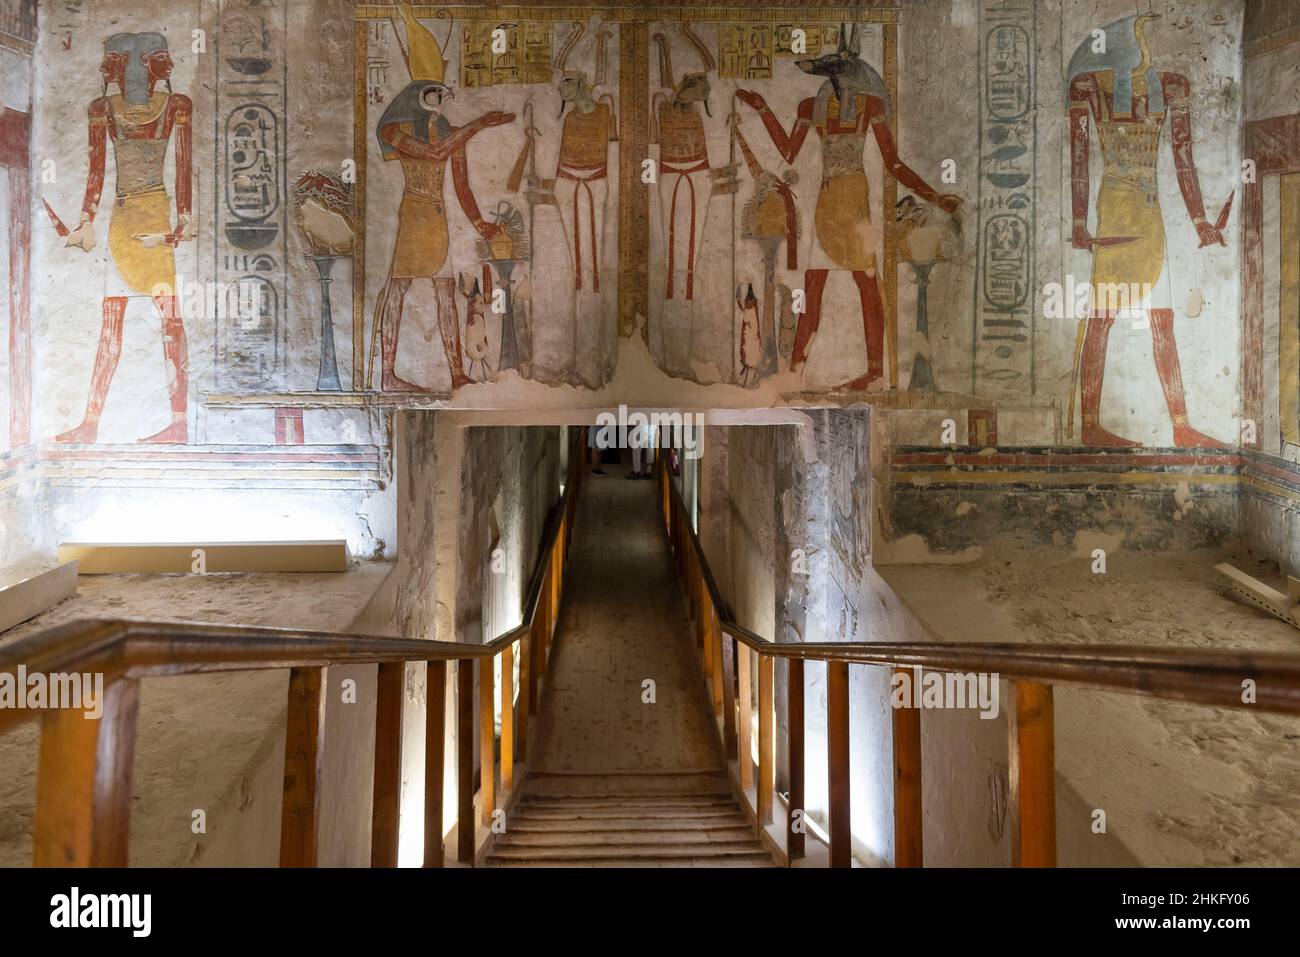 Egitto, Alto Egitto, Valle del Nilo, Luxor, Valle dei Re, patrimonio mondiale dell'UNESCO, colorato bassorilievo raffigurante Faraone su un muro della tomba di Ramses III Foto Stock